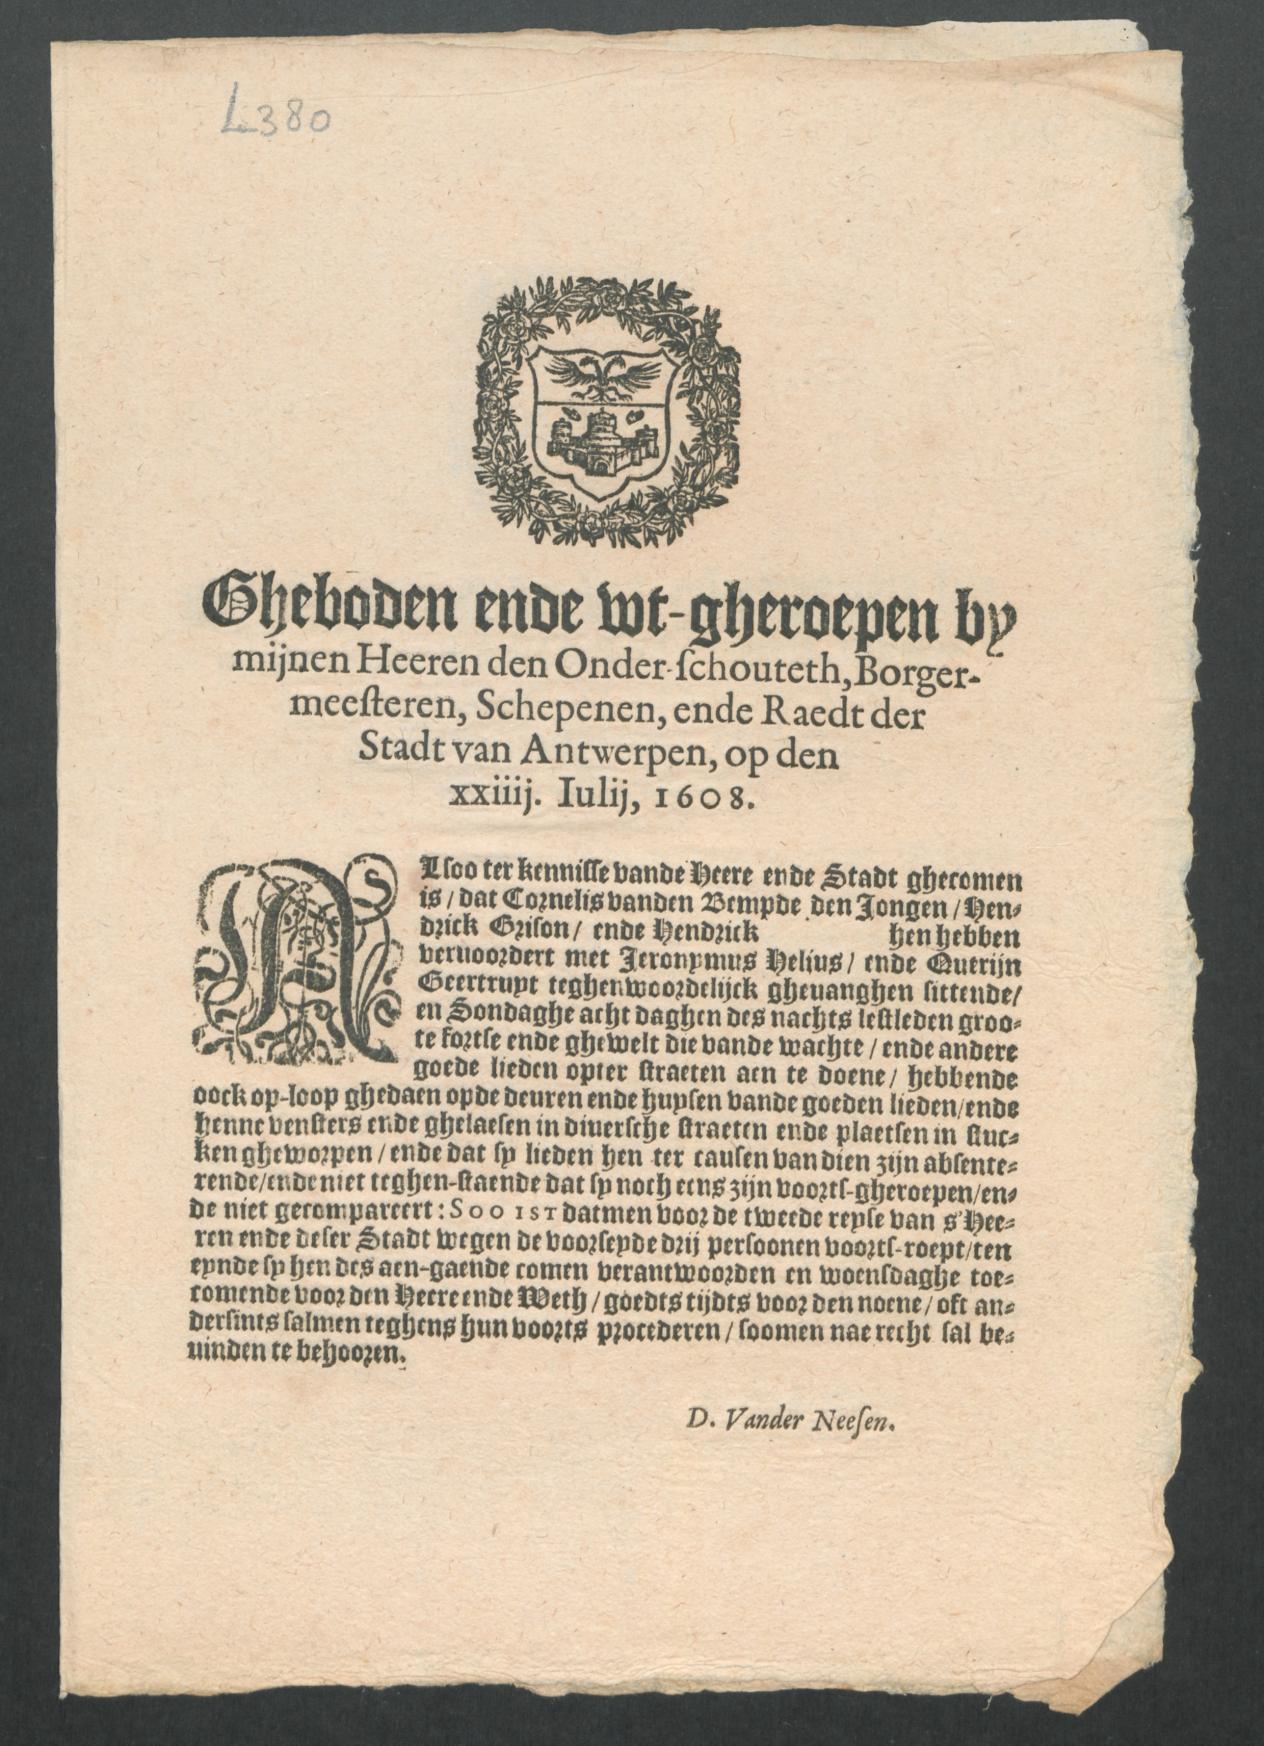 14 juli 1608, Jan I Moretus, Antwerpen Nr. A 2010 II/339, L 380 (3 kopies)